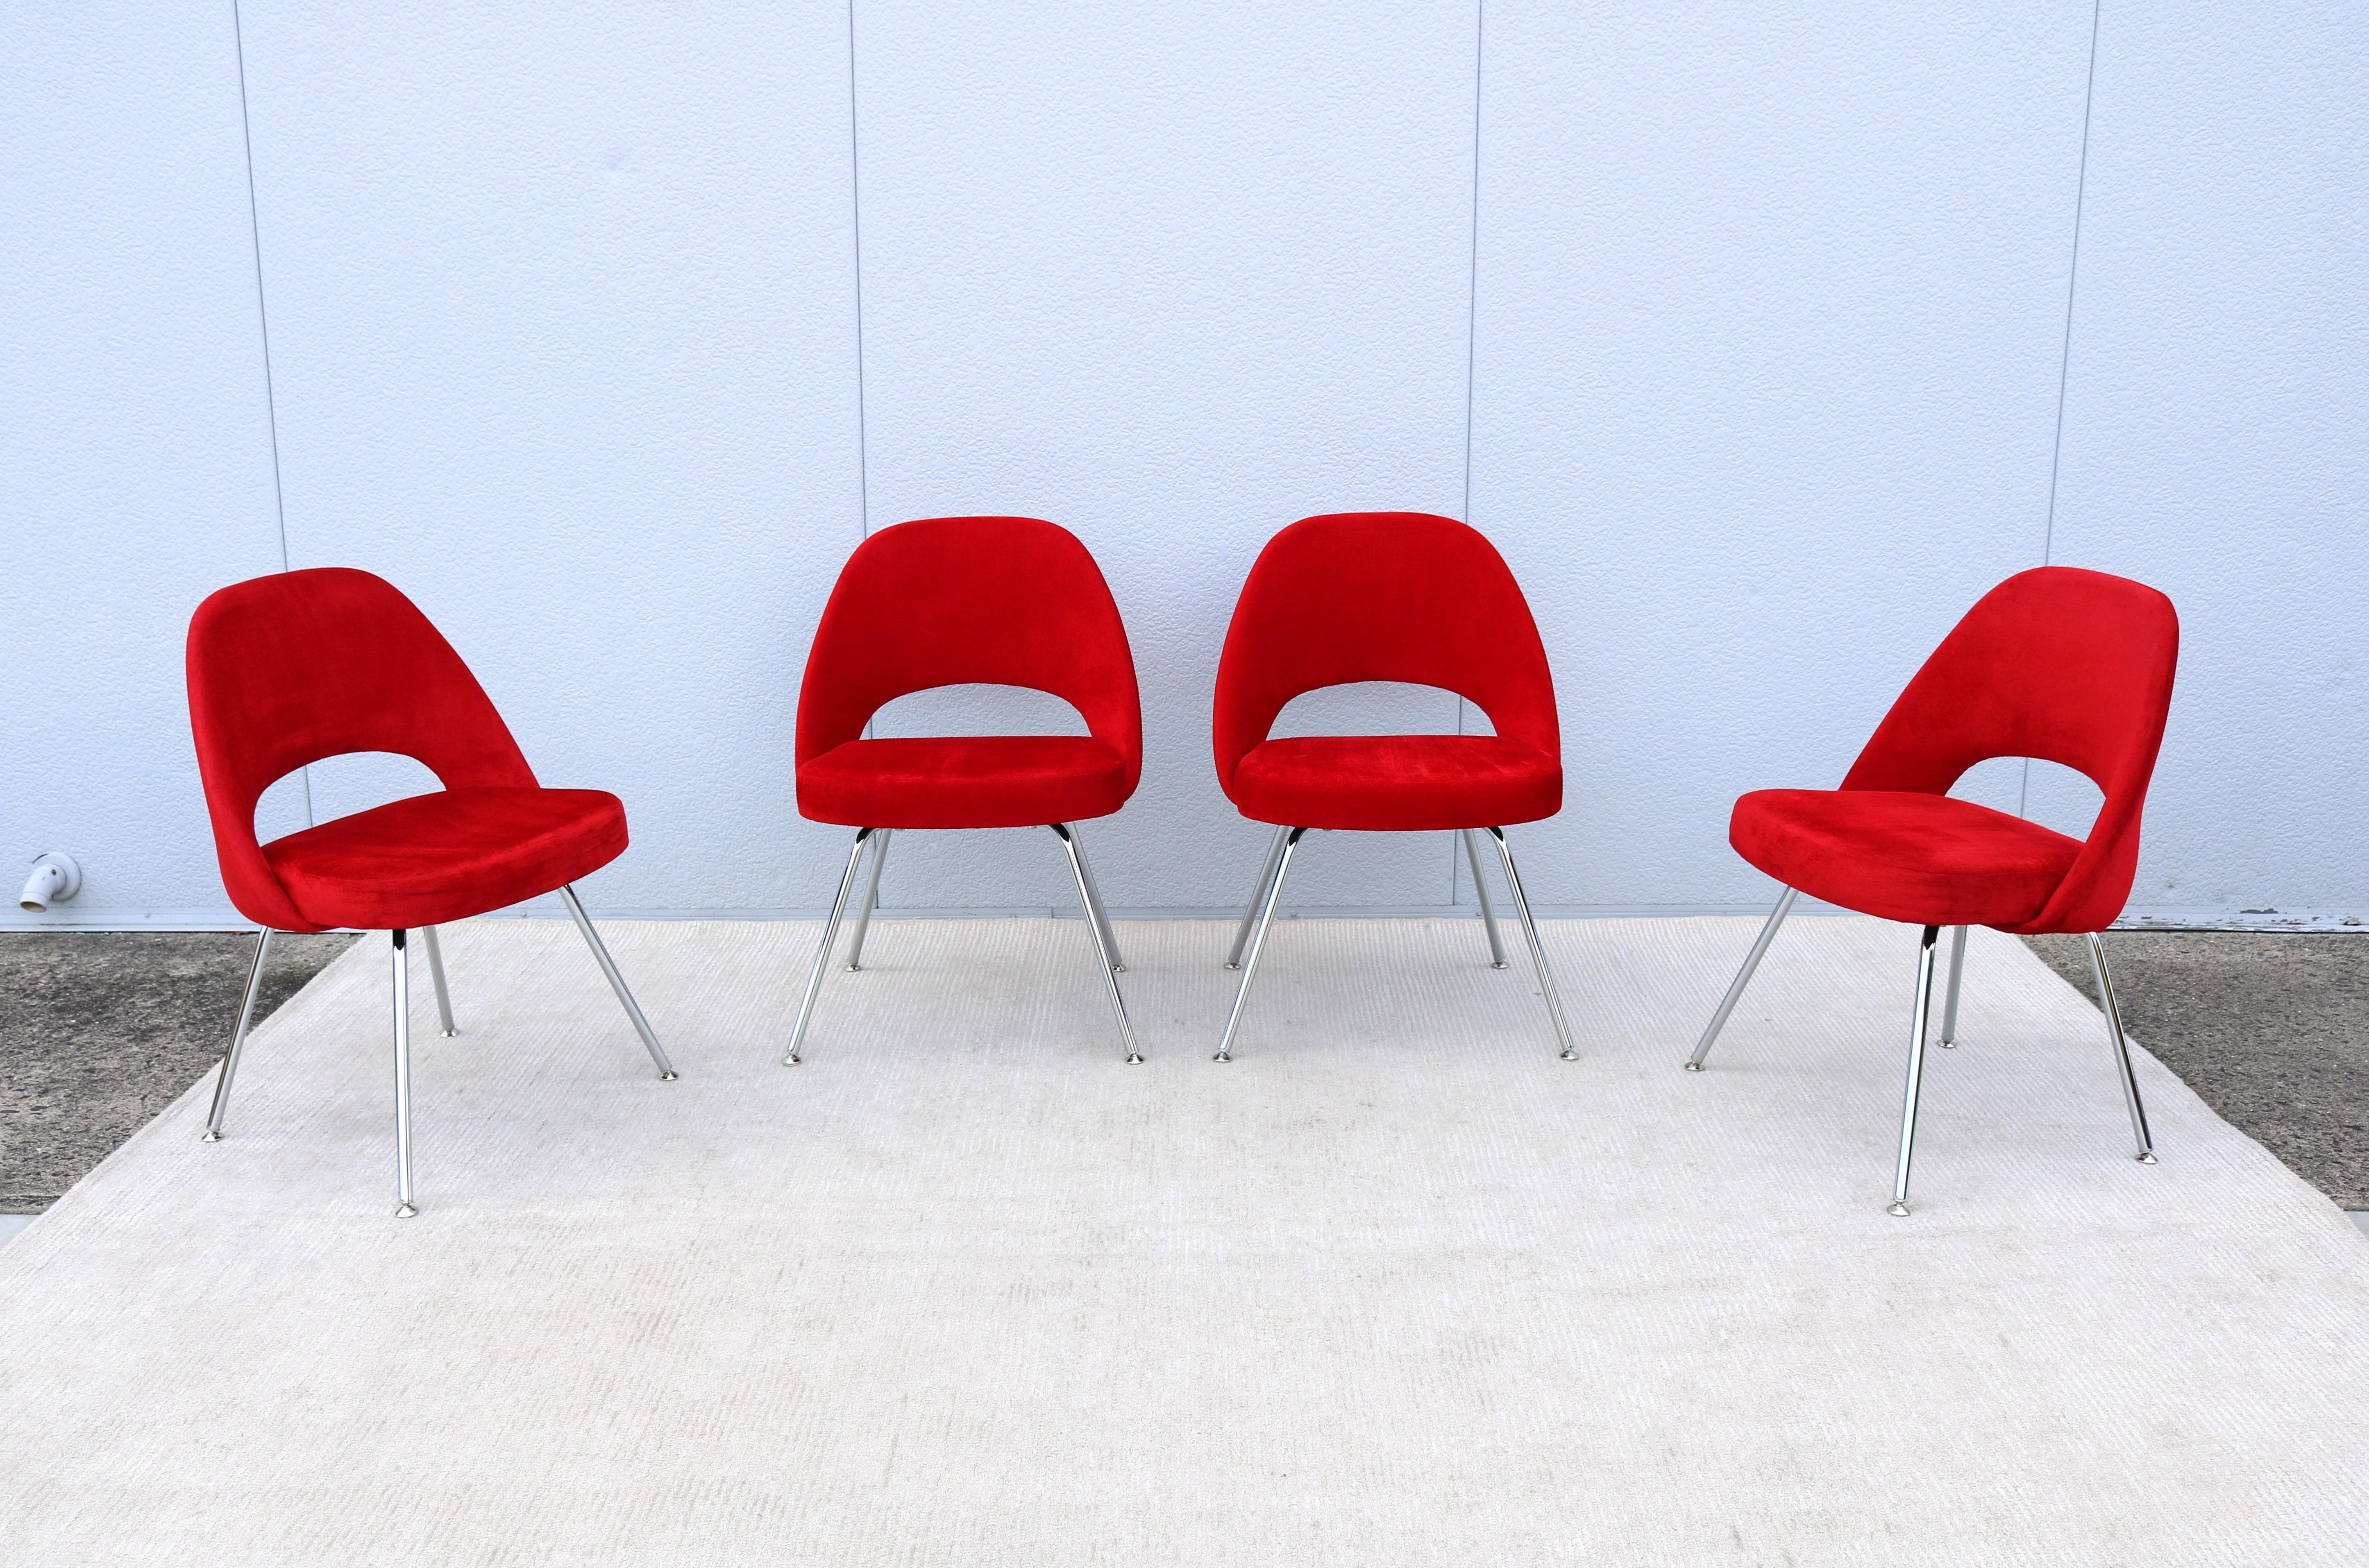 Superbe ensemble de quatre fauteuils de direction sans accoudoirs Saarinen de Knoll, authentiquement moderne du milieu du siècle dernier.
L'un des designs les plus populaires de Knoll qui a atteint un confort suprême grâce à la forme de sa coque.
Il